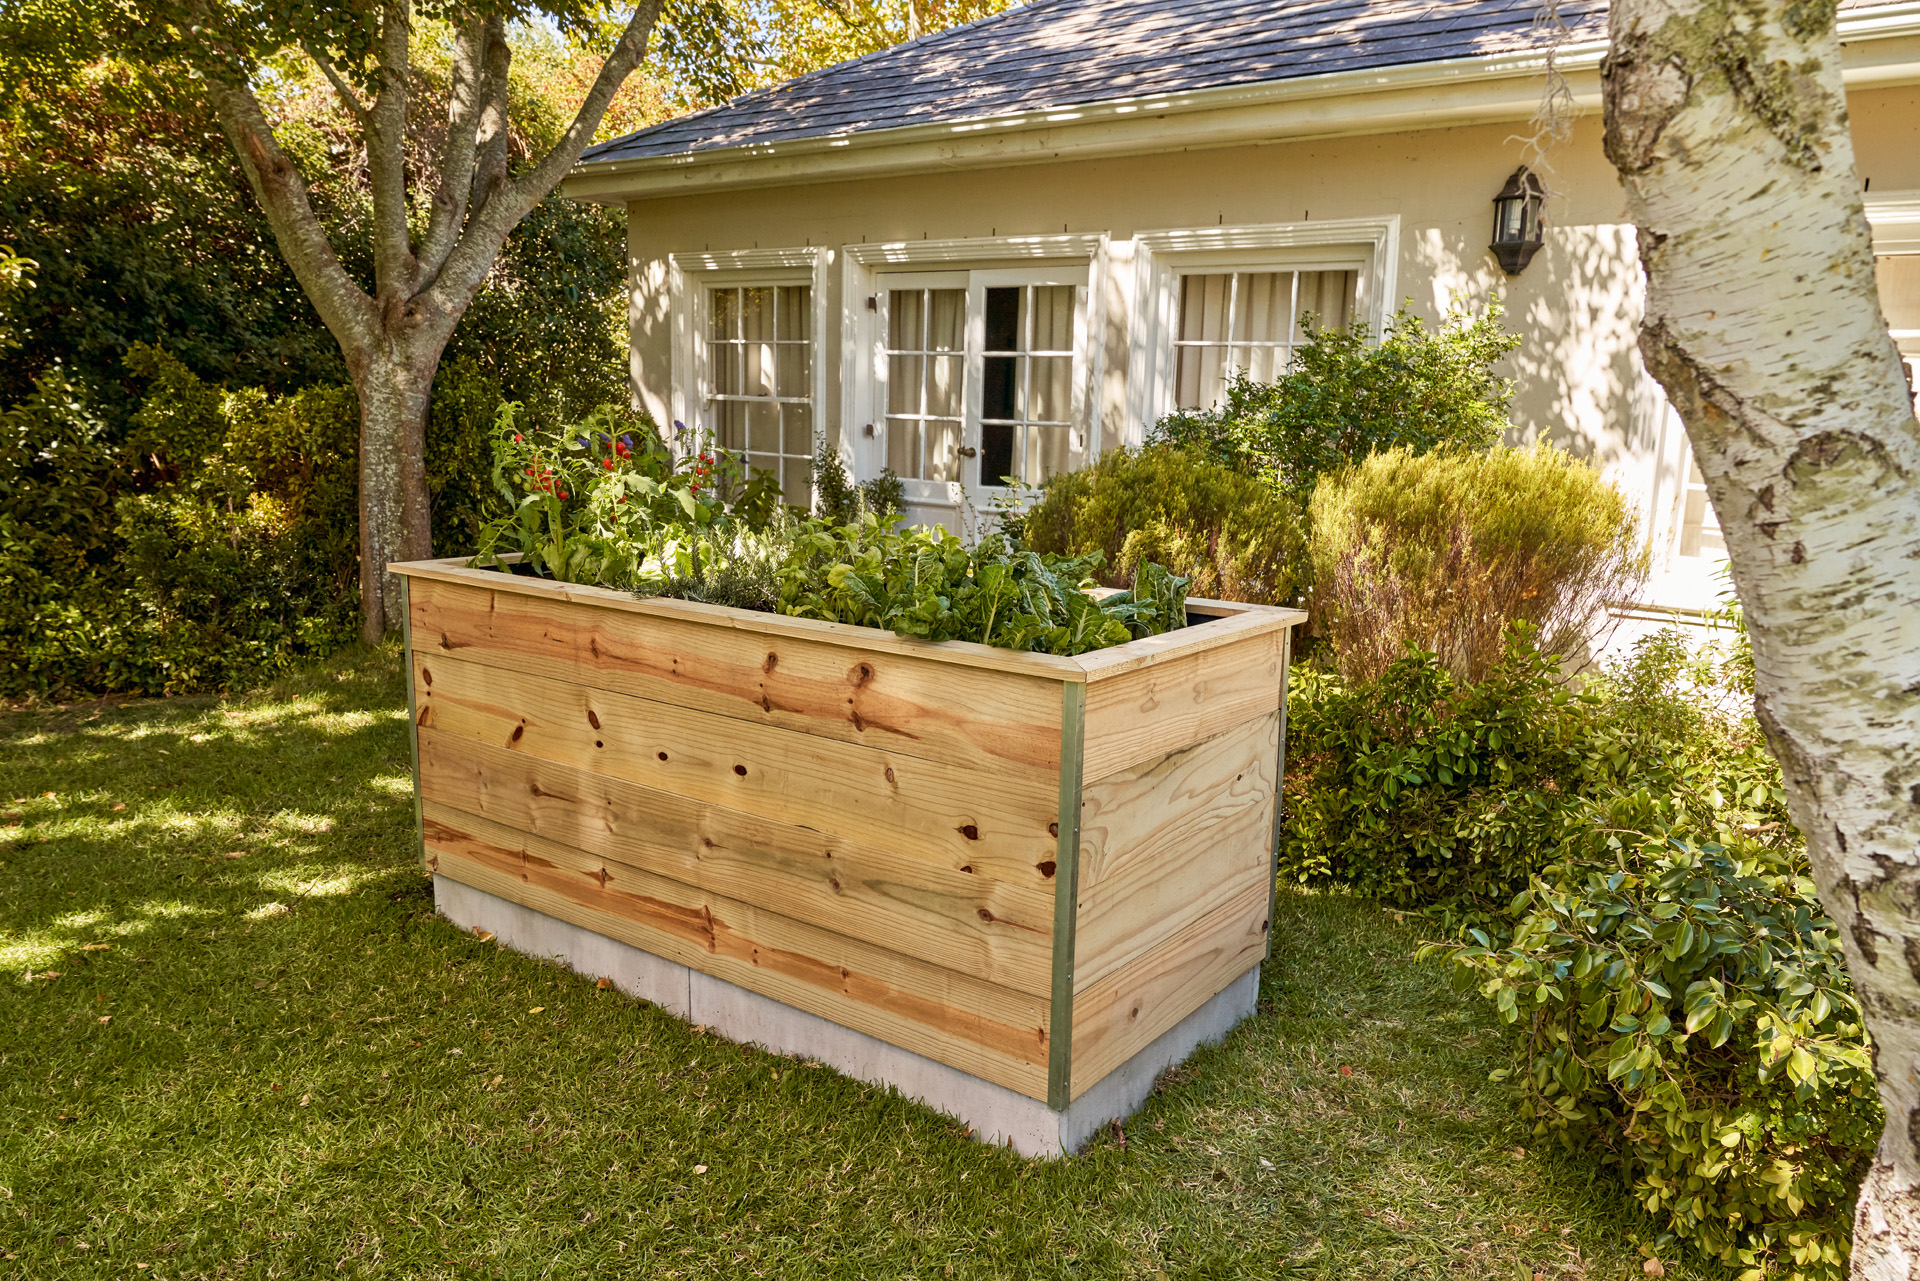  Aiuola rialzata piantumata realizzata con tavole di legno in un giardino davanti a una casa